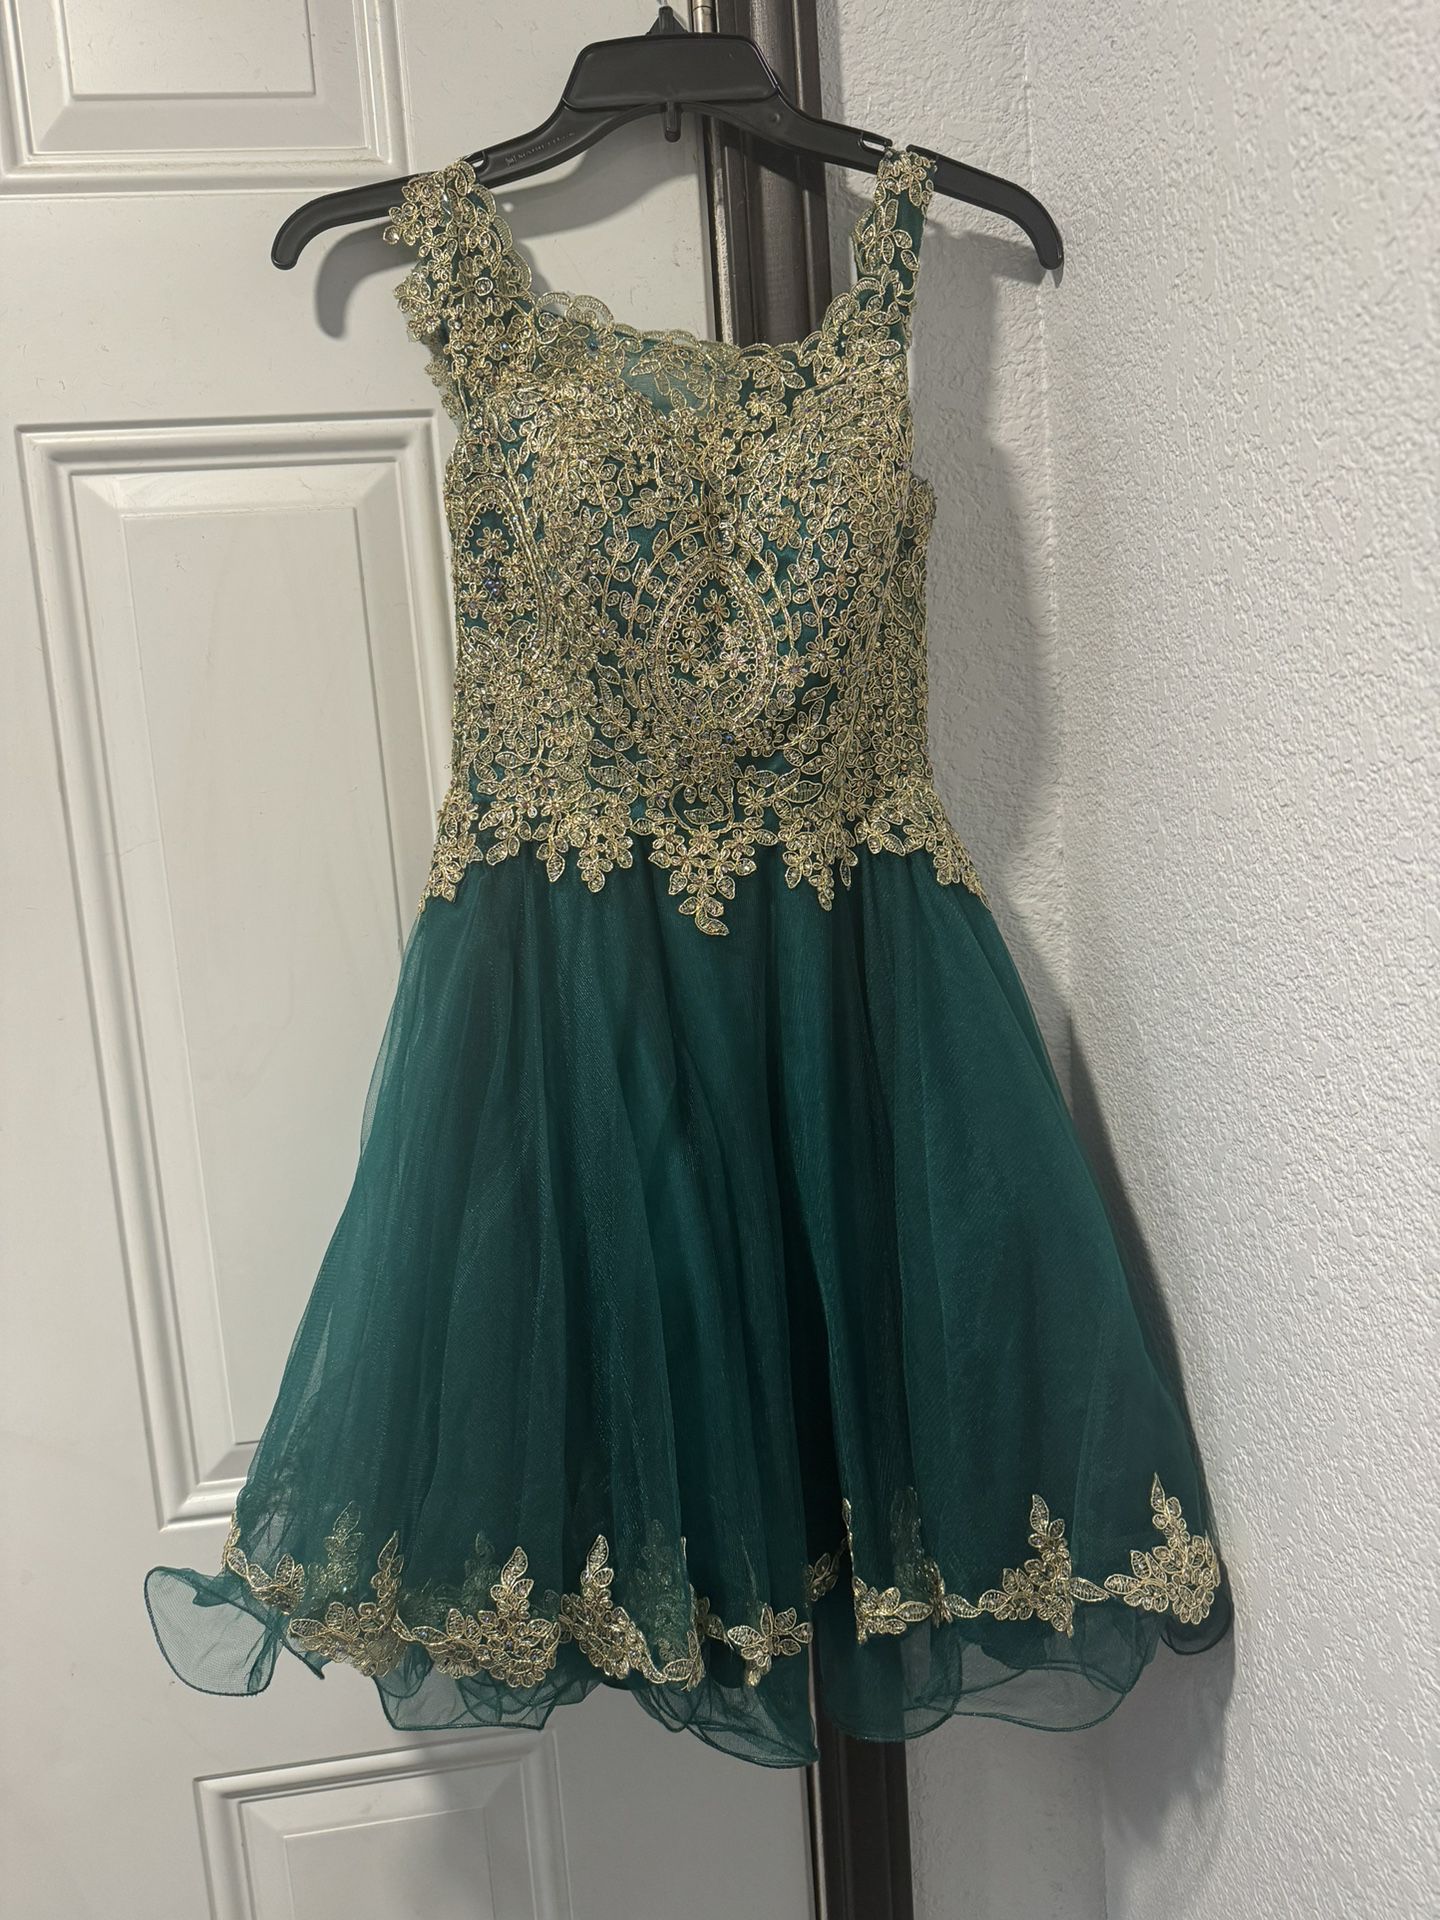 Emerald Green Dress 